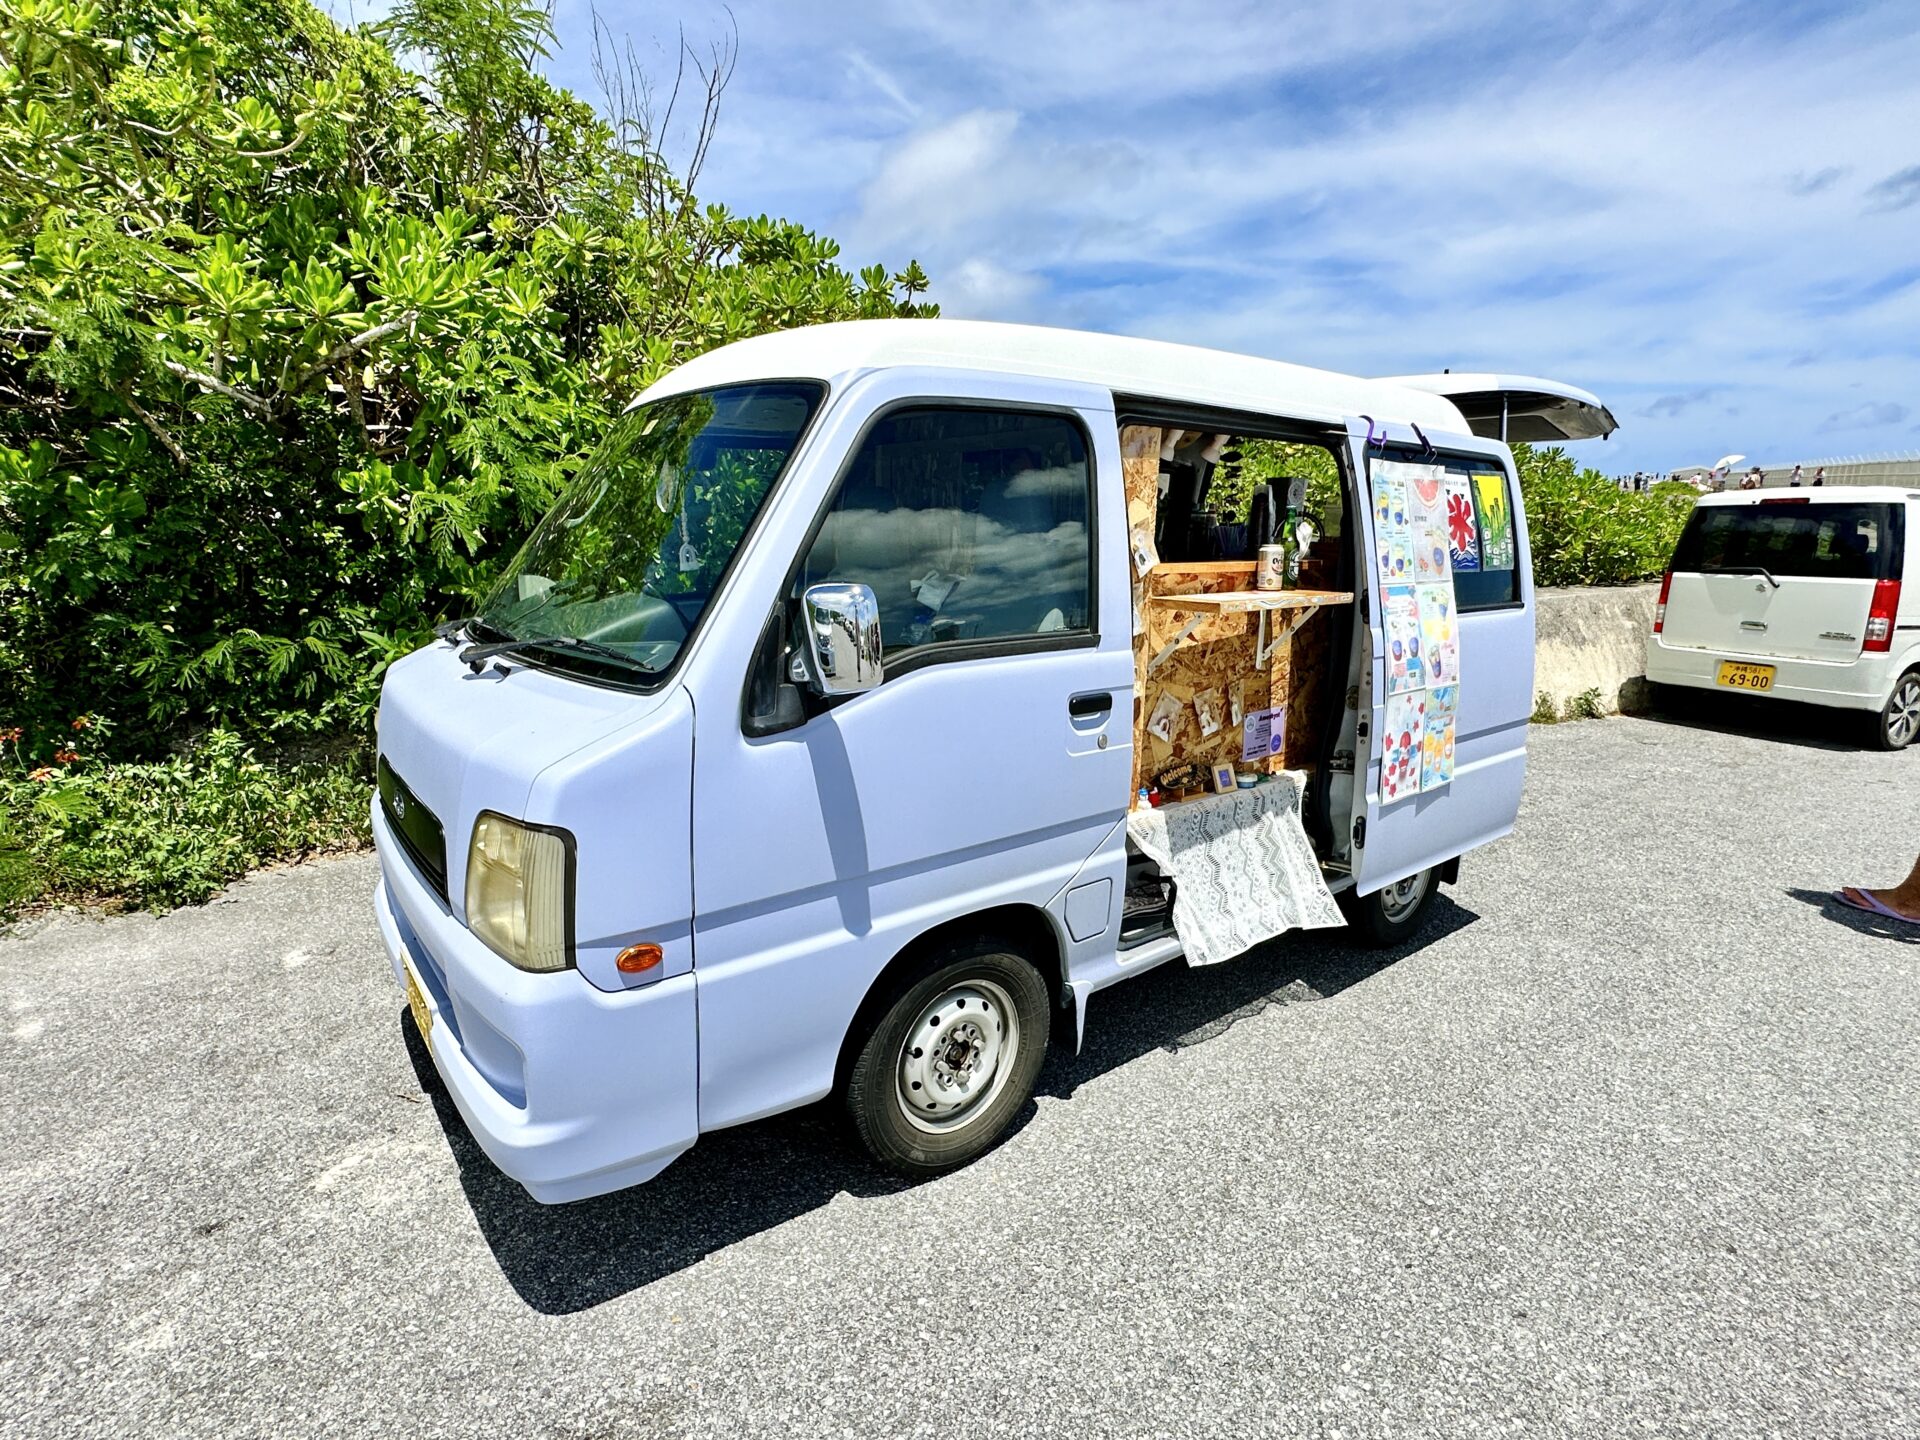 【ブログ旅行記】はじめての宮古島旅行 3泊4日ゆったりモデルコース 17END入口のキッチンカー